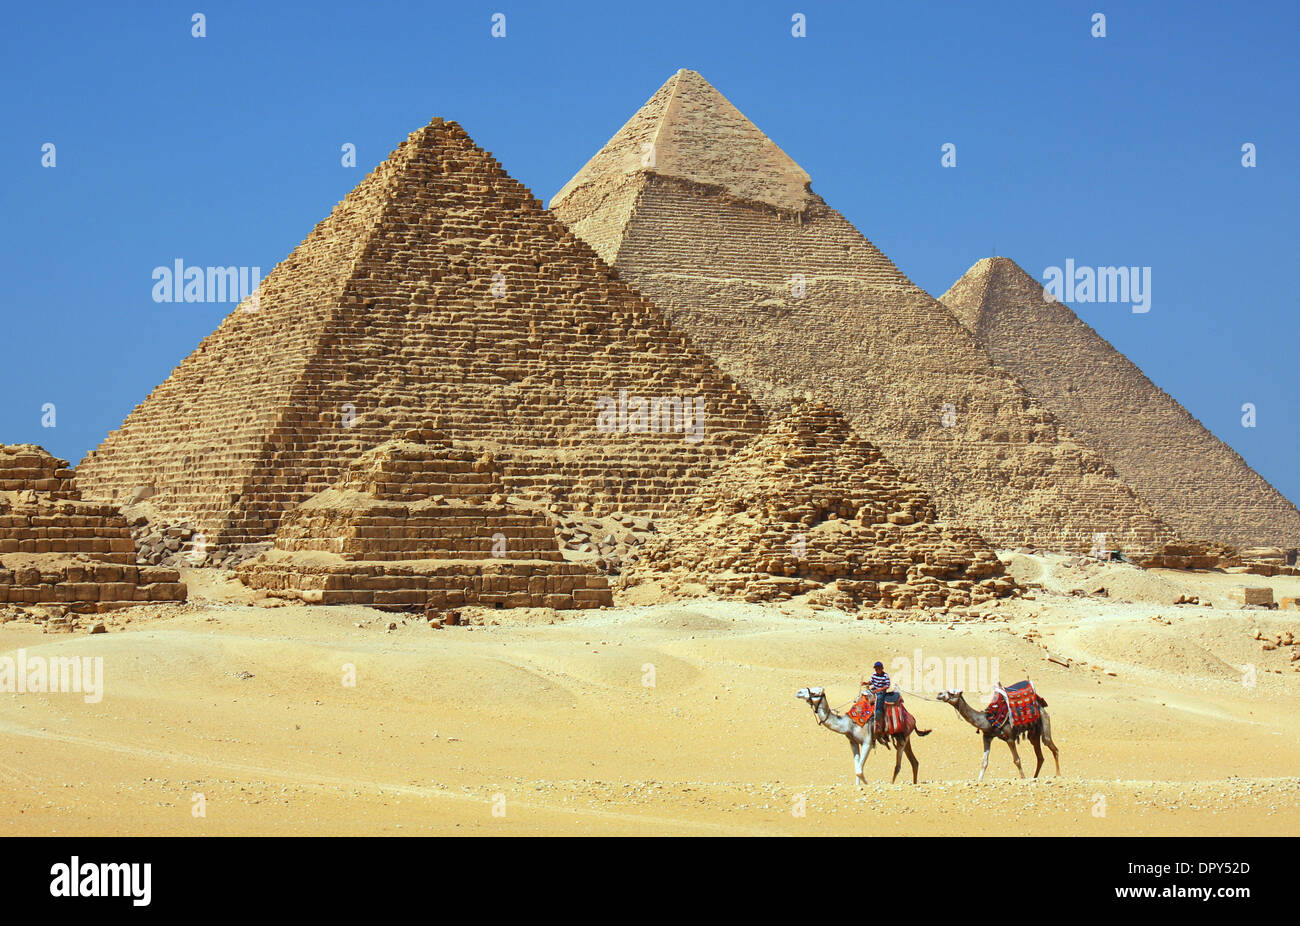 Les Pyramides de Gizeh en Egypte Banque D'Images